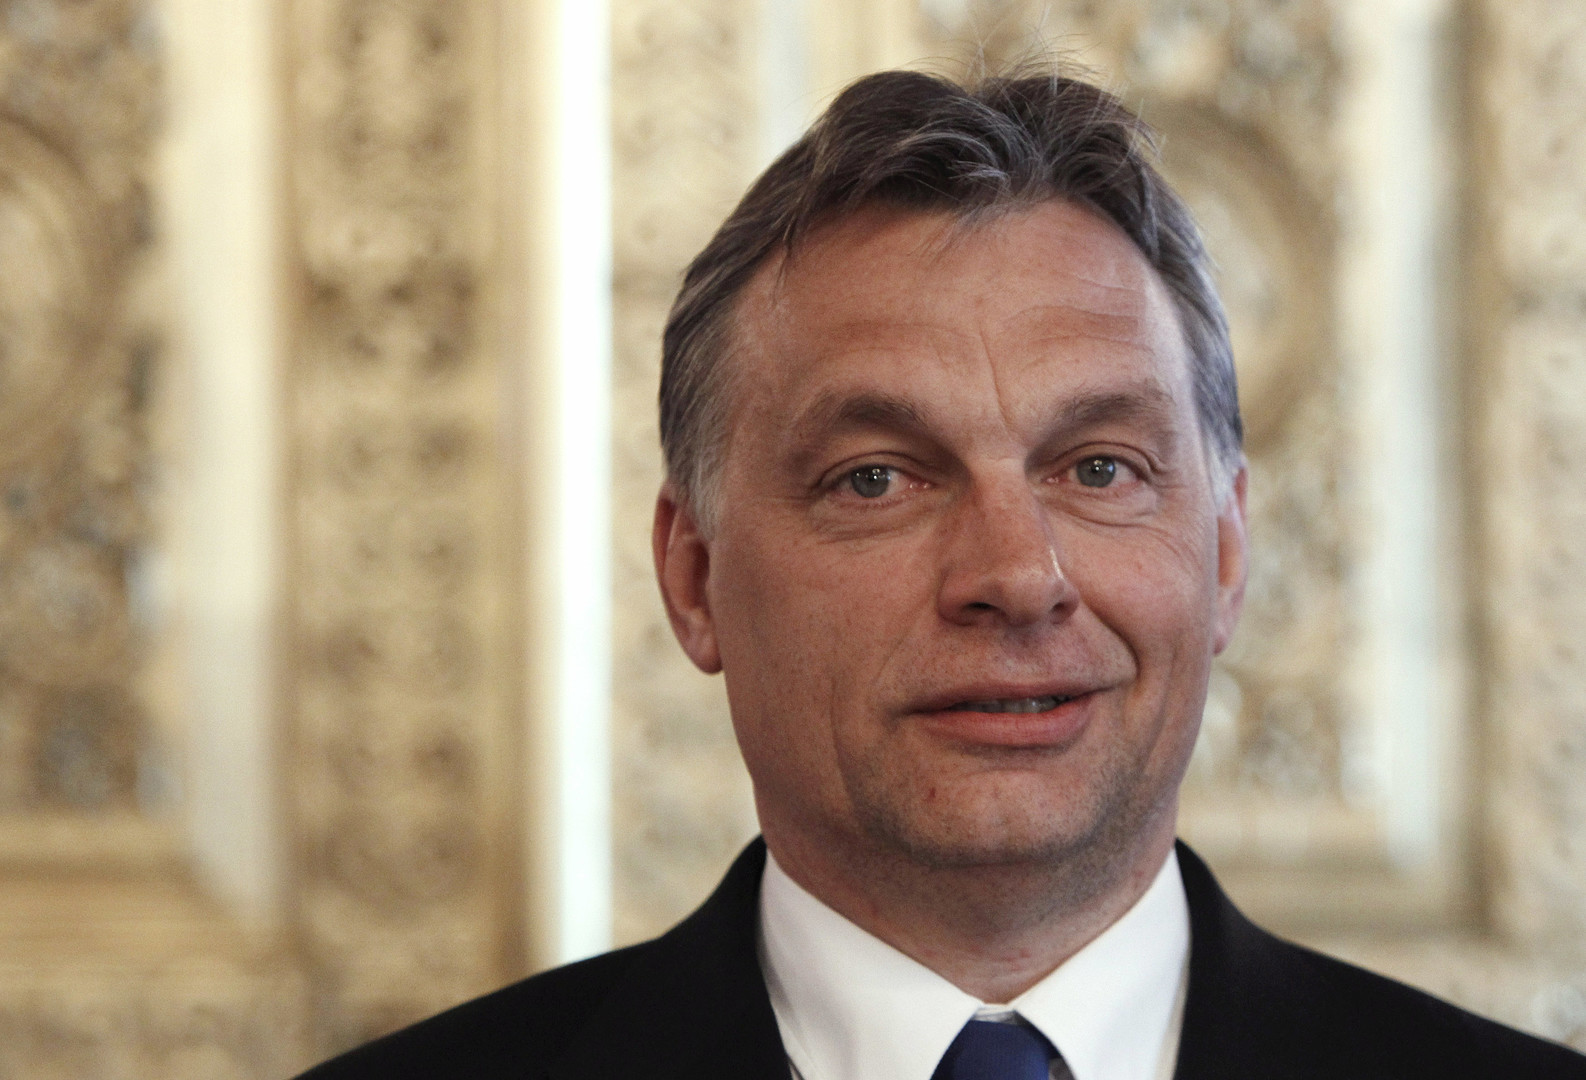 رئيس الوزراء الهنغاري: يحذر من فقدان اوروبا لـ"جذورها المسيحية" بسبب الهجرة.